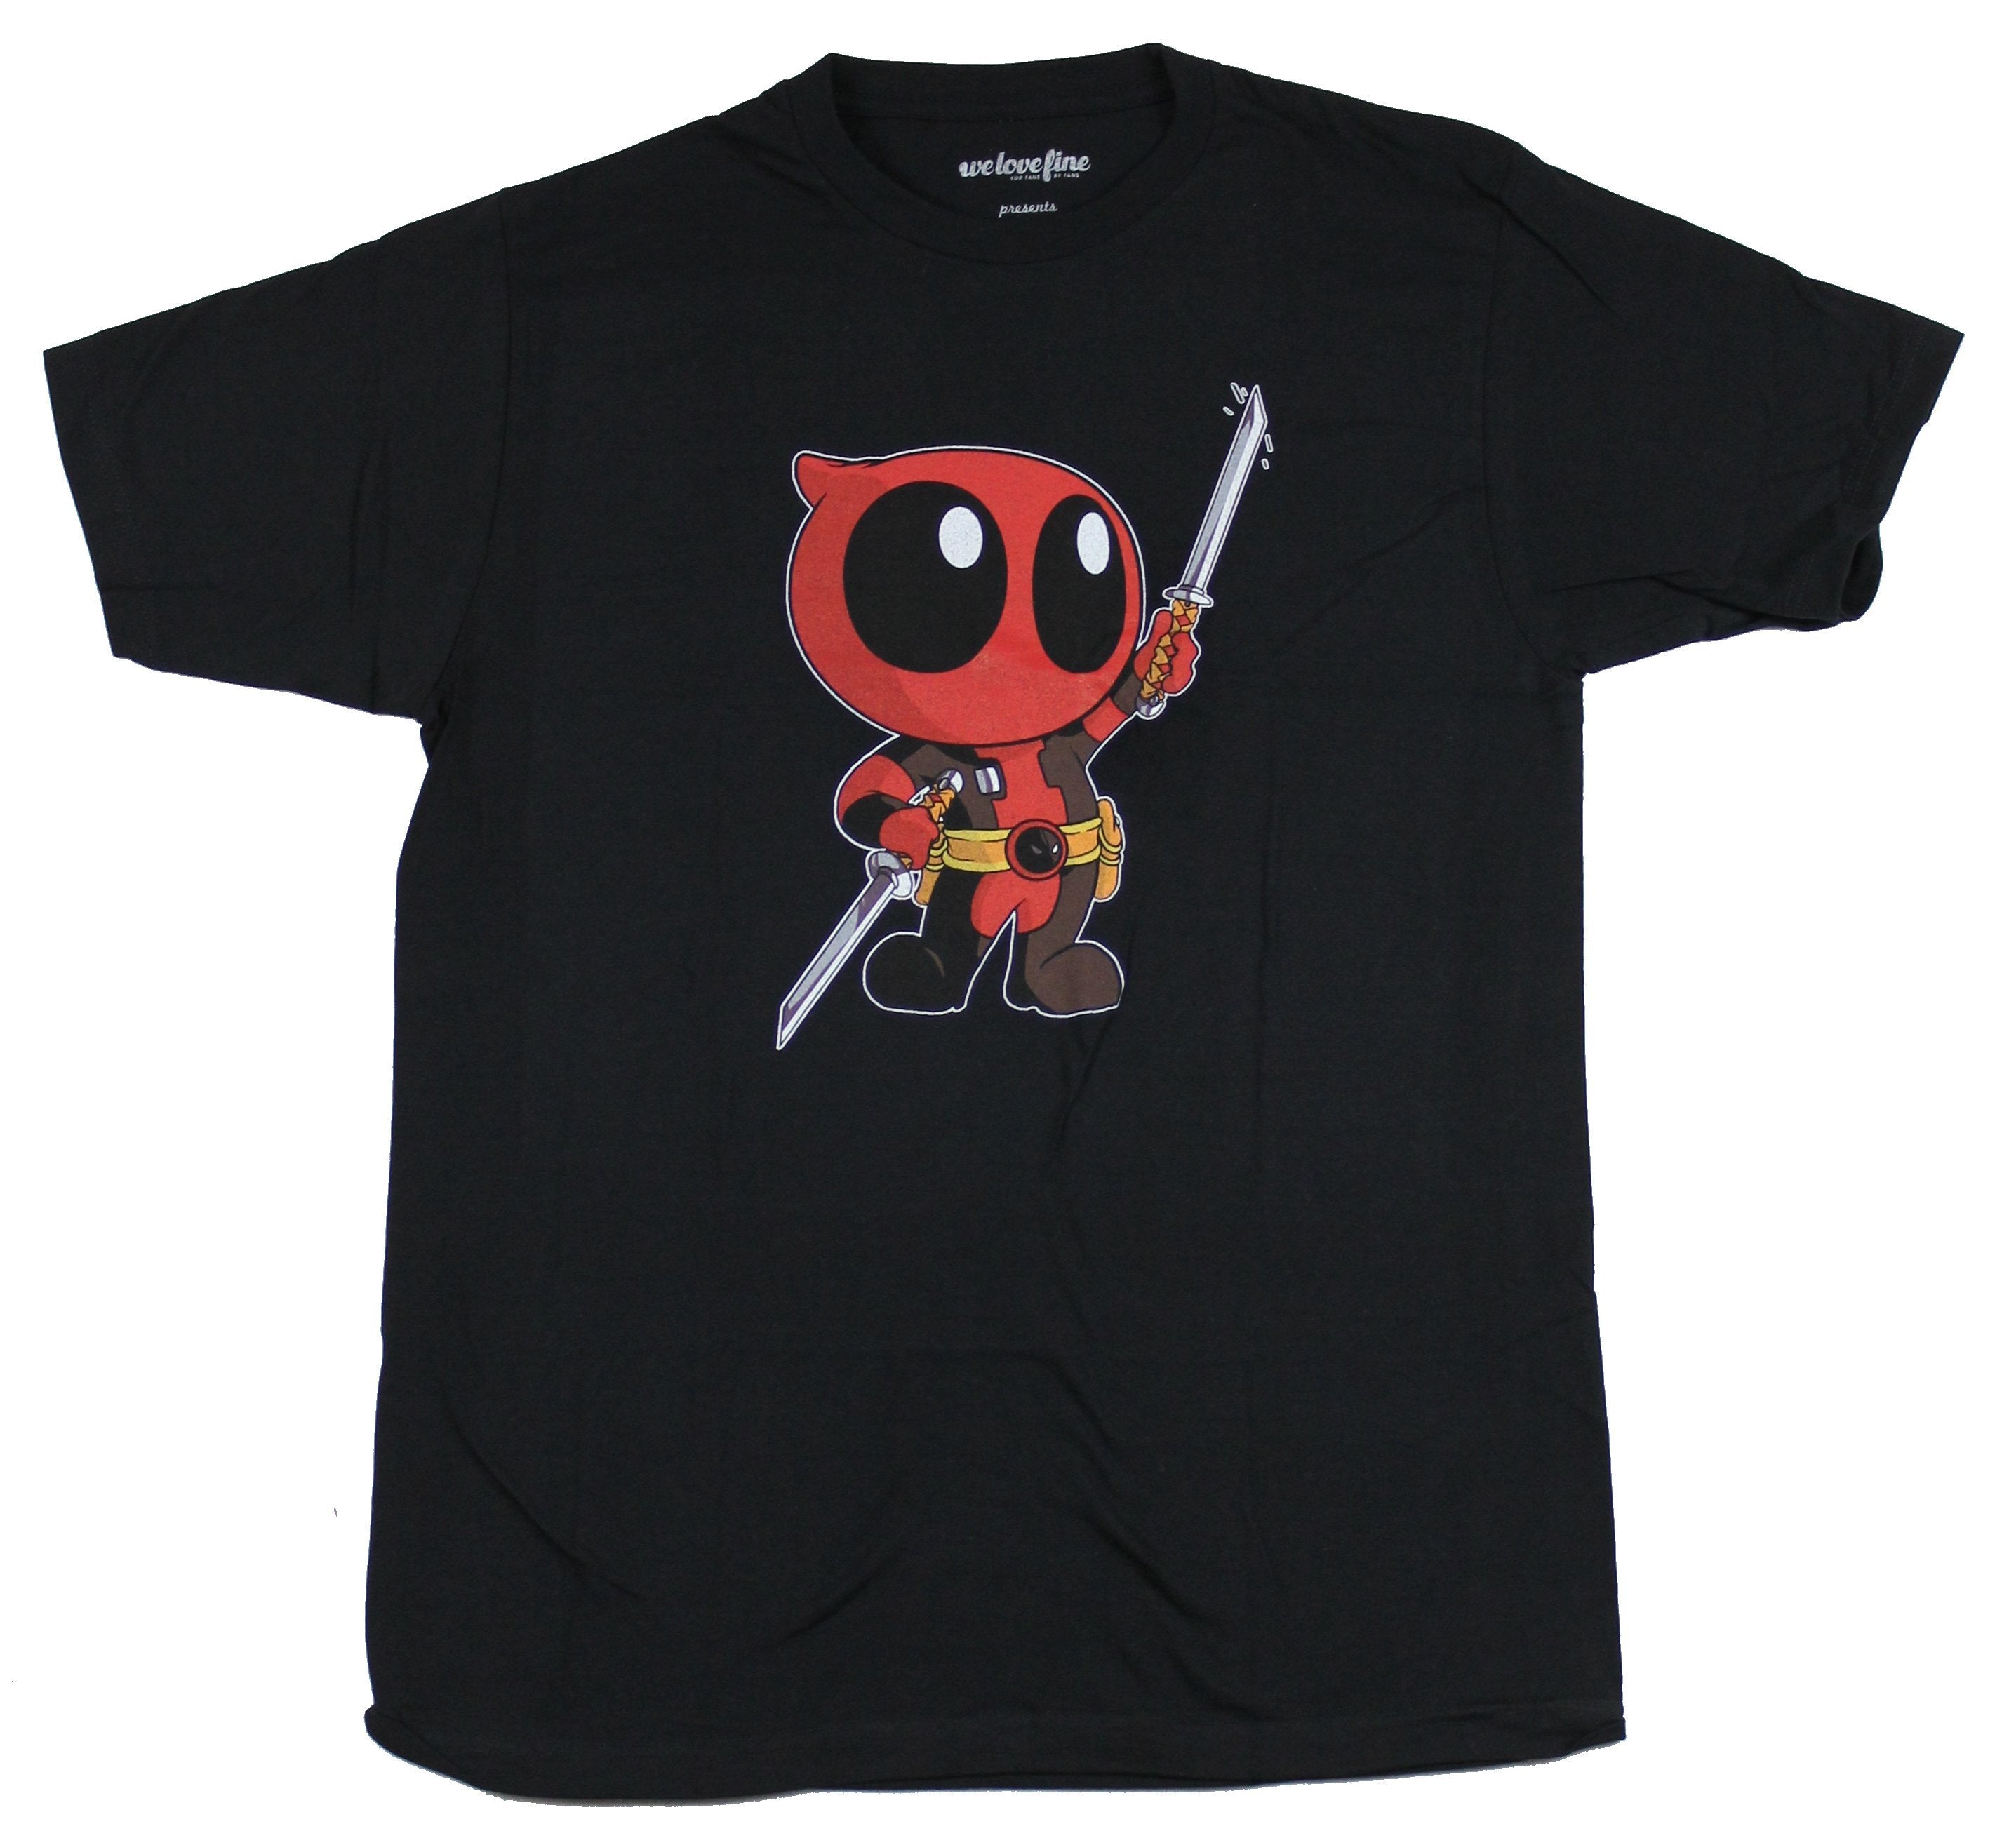 Deadpool (Marvel Comics) Mens T-Shirt - Cutie Deadpool Swords Up Image